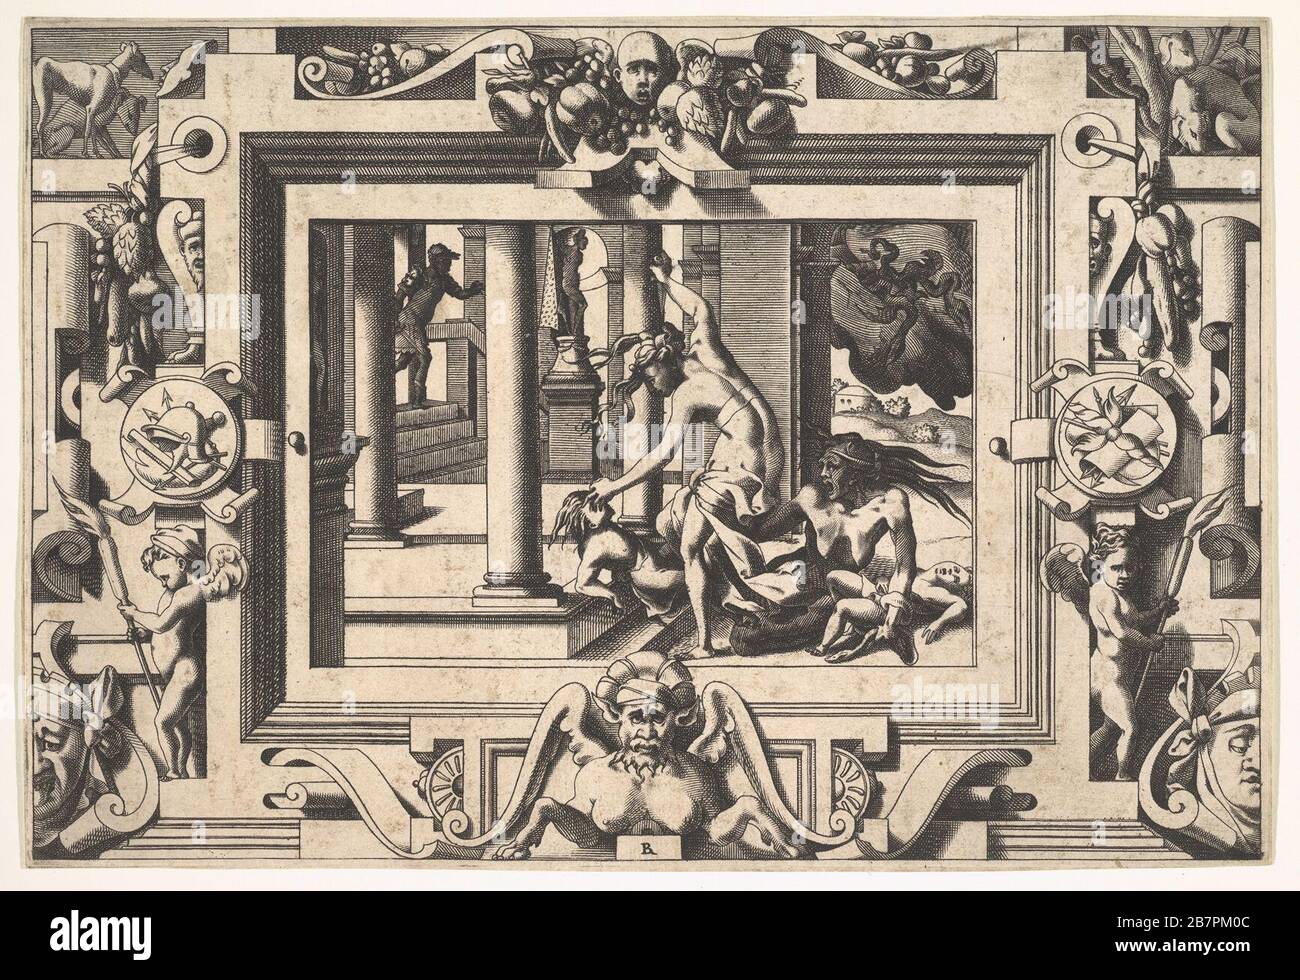 Medea Kills her Two Children by Jason (Pour qui d'Absyrte a le sang repandu, fait que du sien le tort lui soit rendu...), 1563. After Leonard Thiry Stock Photo